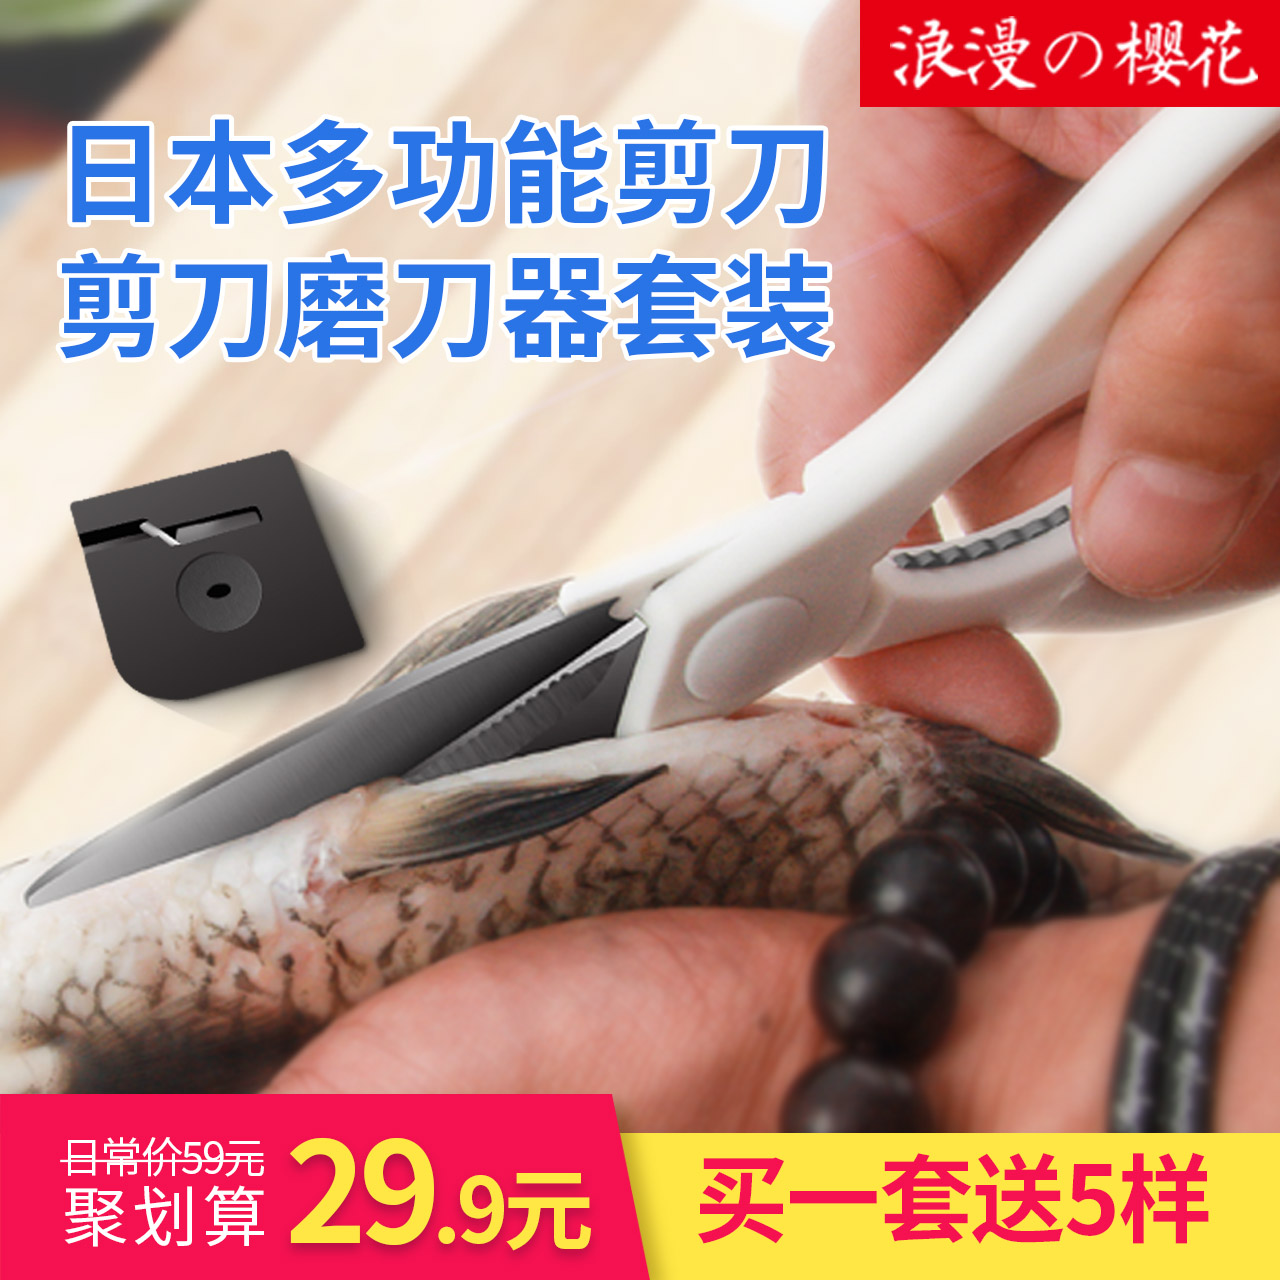 日本多功能厨房剪刀和磨剪刀器套装 剪鱼和剪保鲜膜一样都轻松